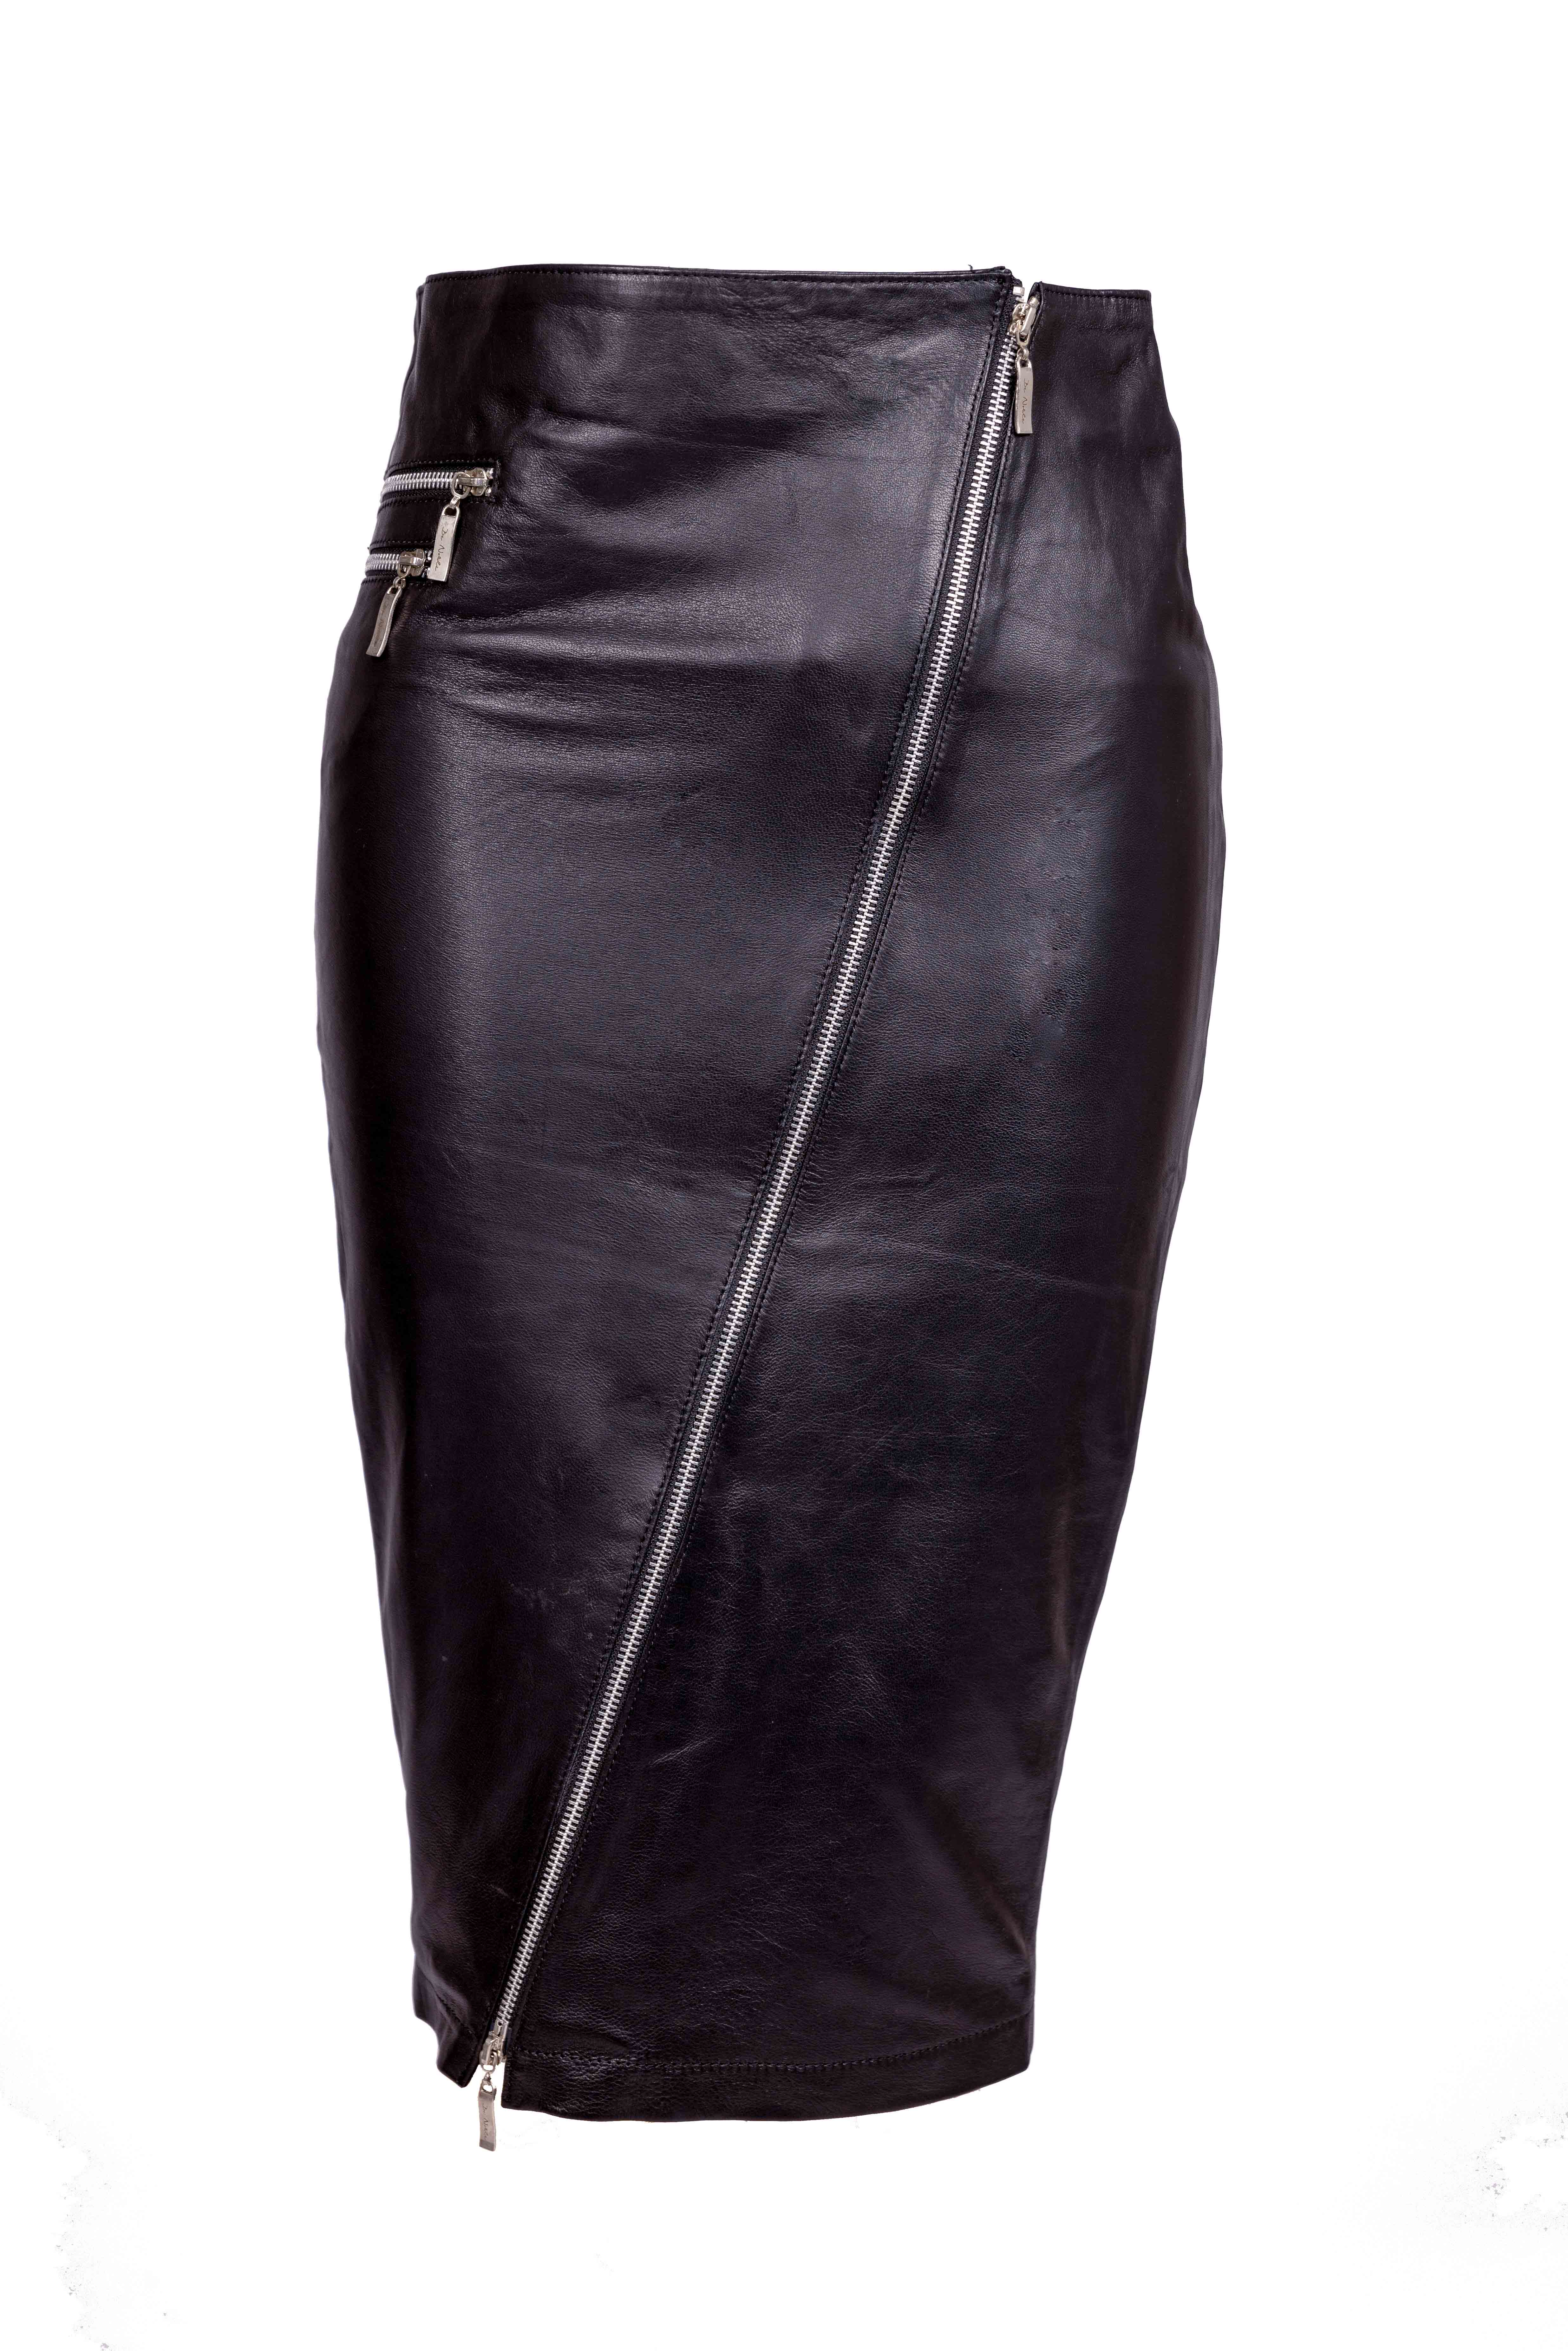 Falda de cuero, falda lápiz de cuero genuino en elegante color negro